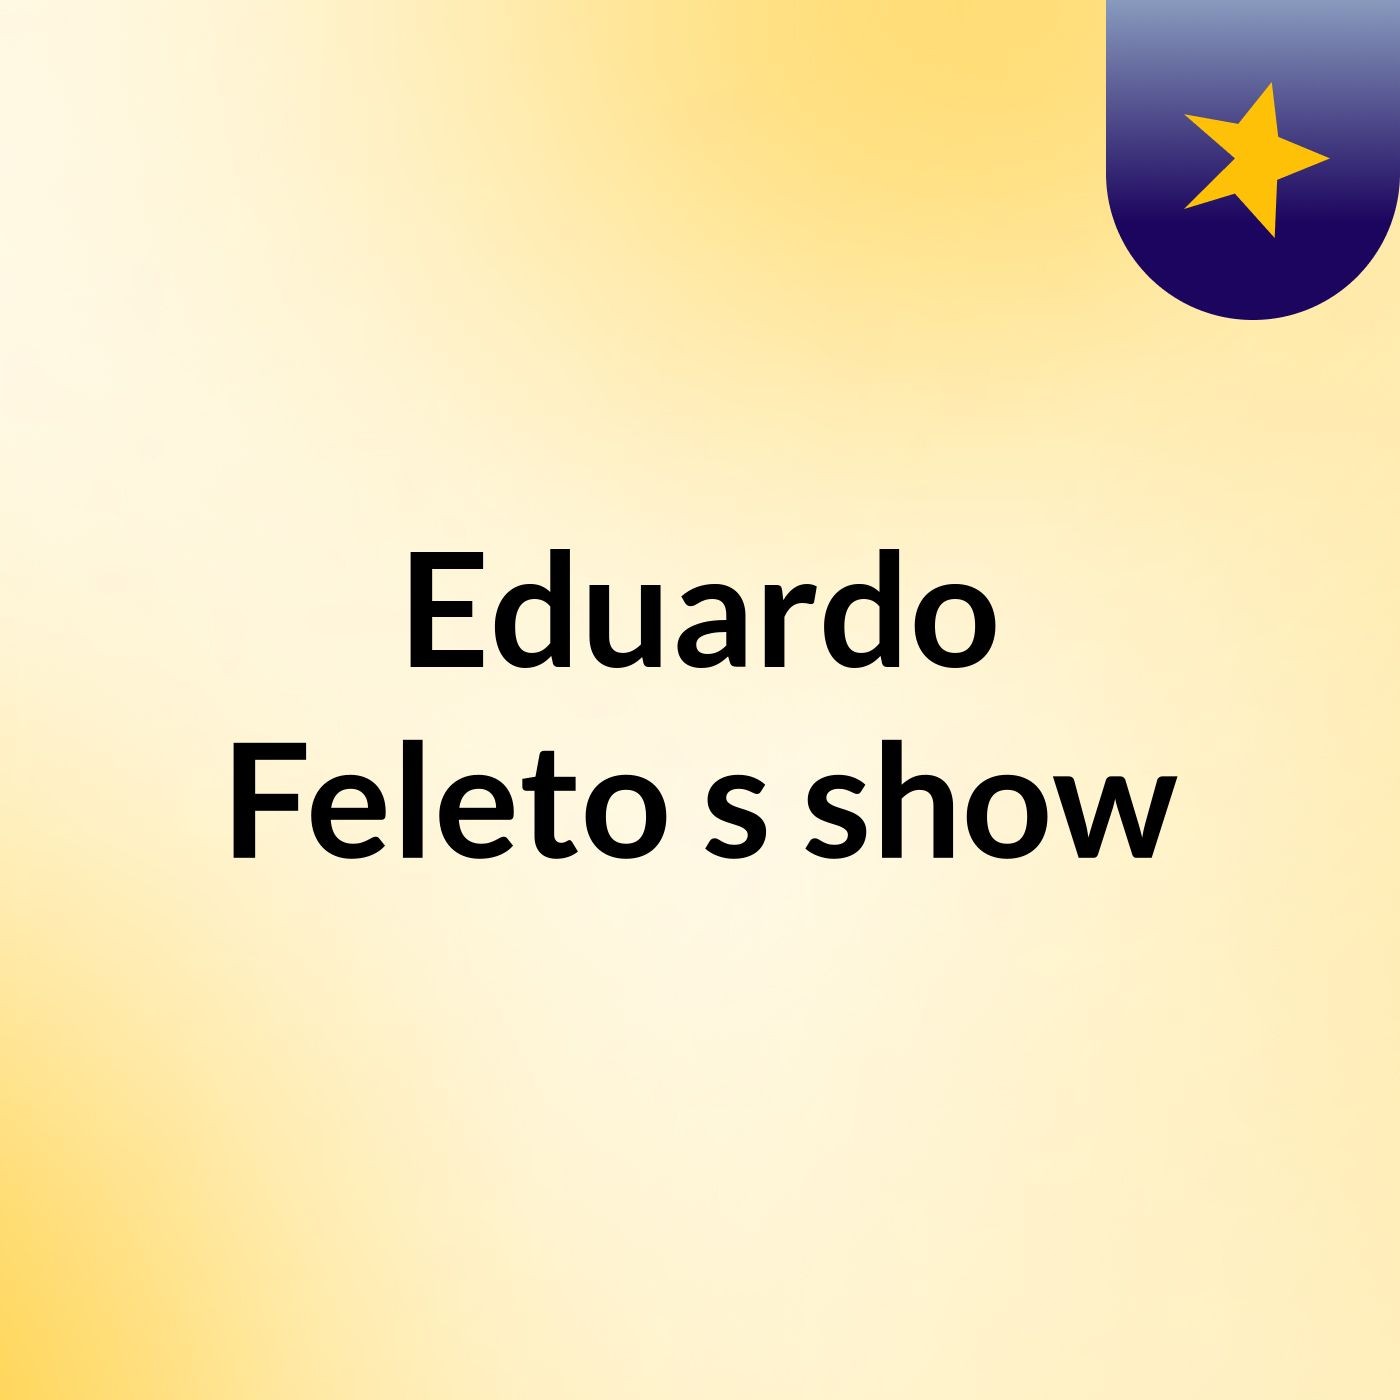 Eduardo Feleto's show